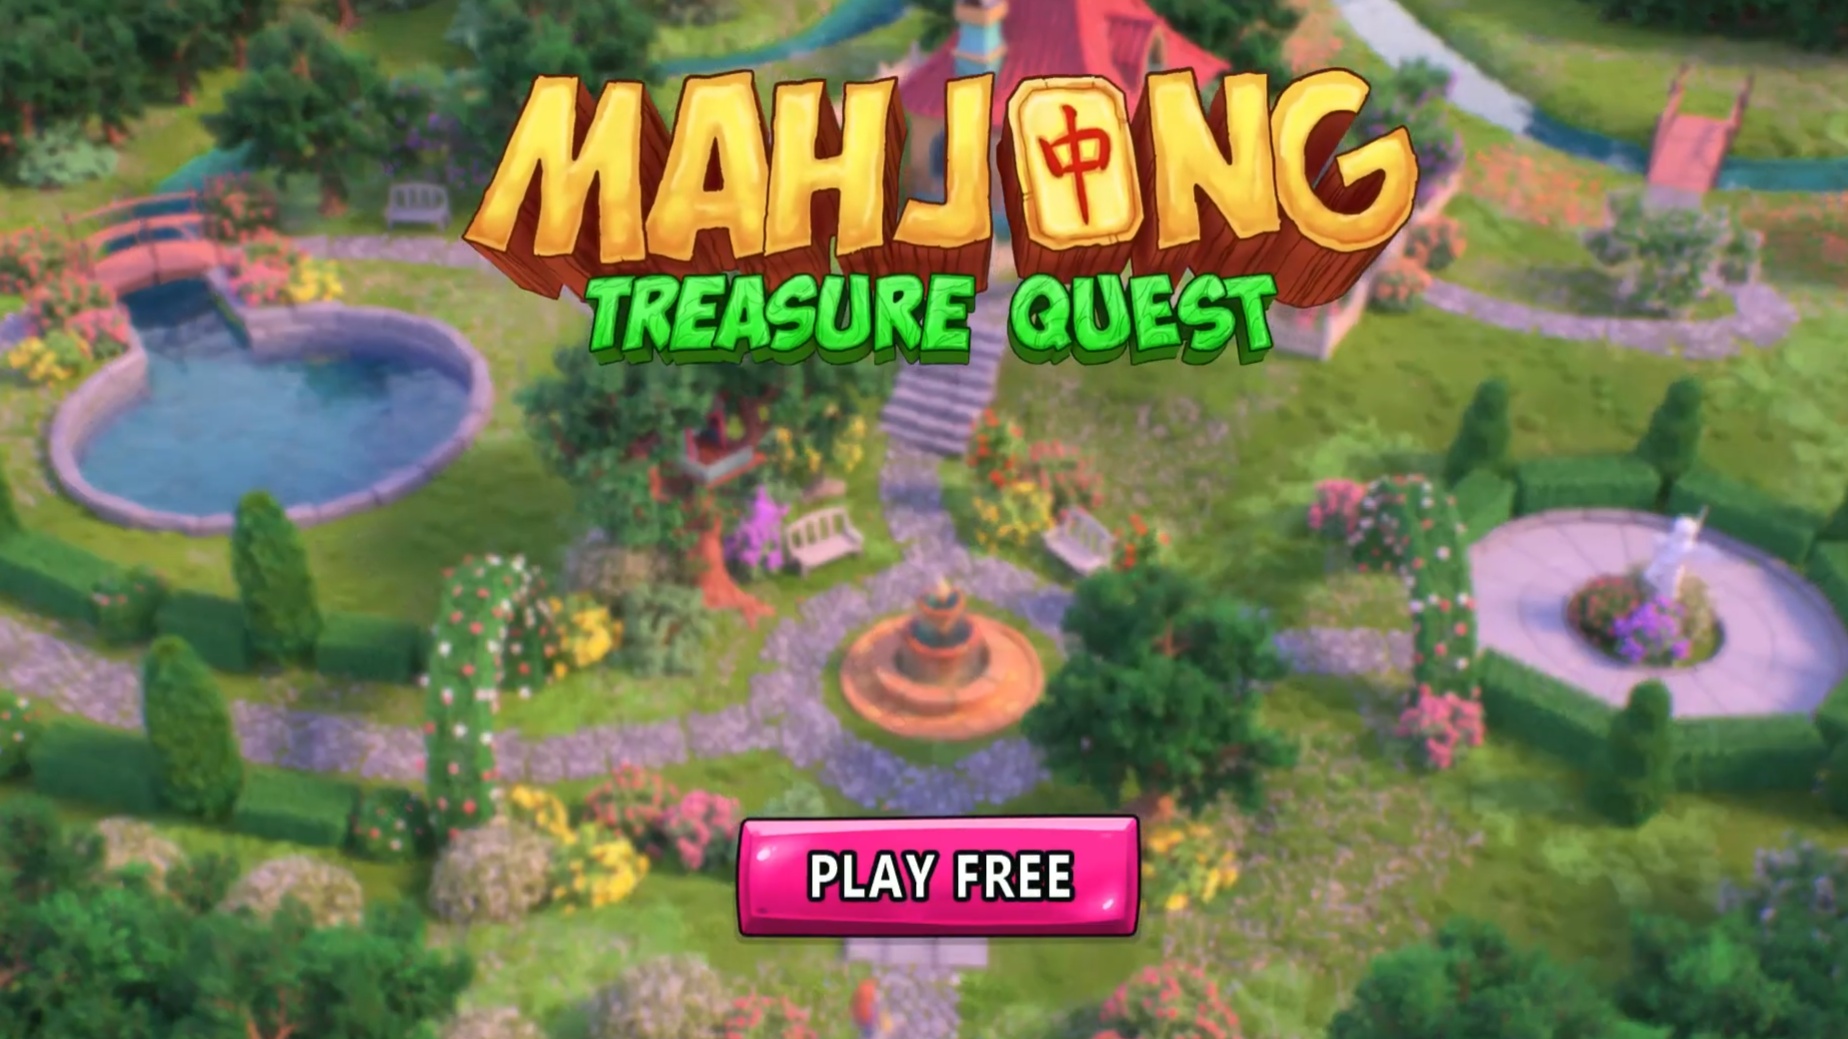 mahjong treasure quest coins apk 2.14.4